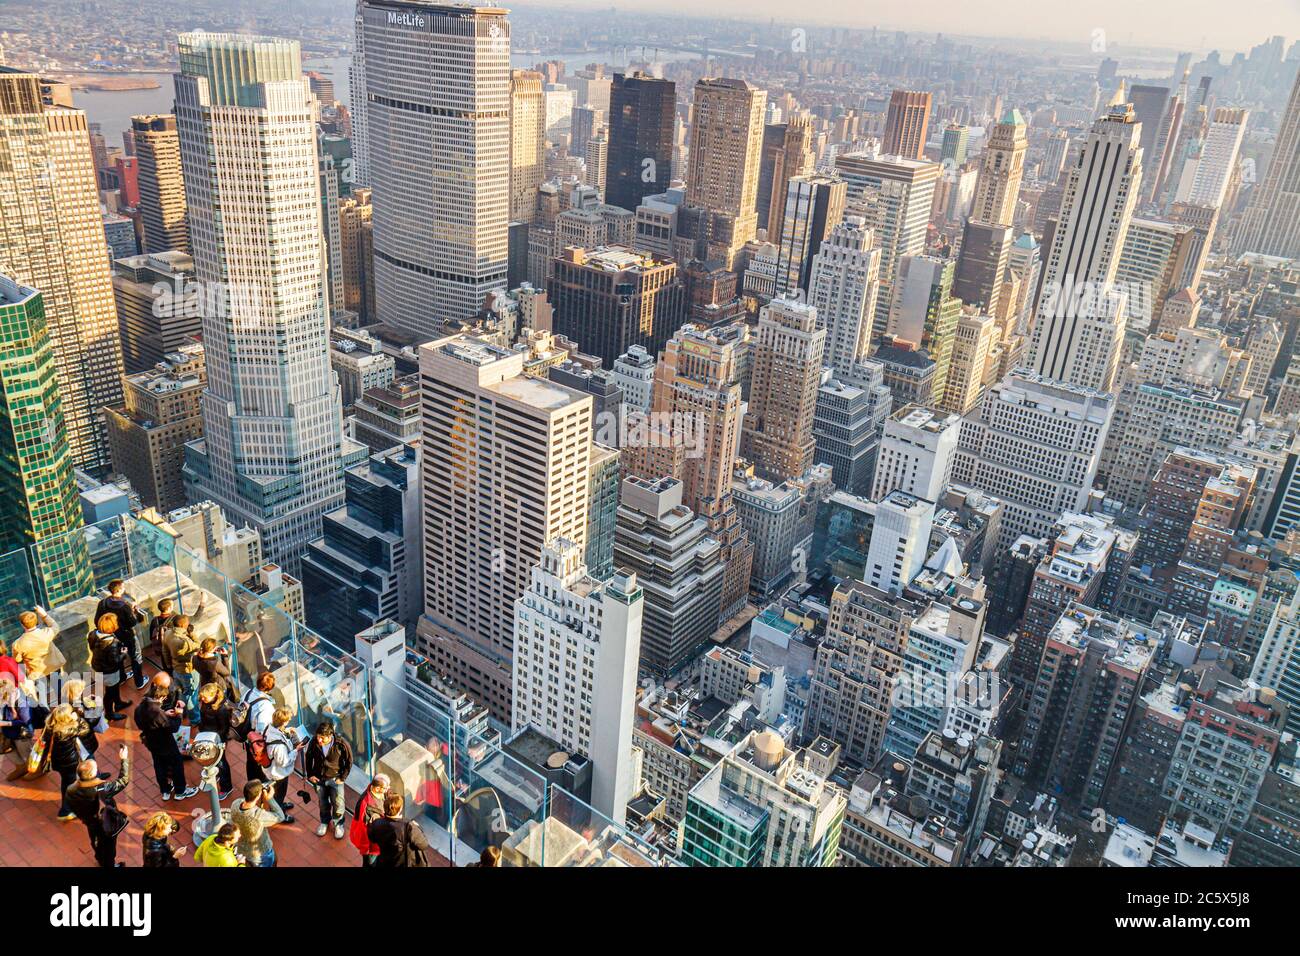 Ciudad de Nueva York,NYC NY Manhattan,Midtown,6th Sixth Avenue of the Americas,Rockefeller Center,Top of the Rock Observation Deckskyline,rascacielos,edifín Foto de stock